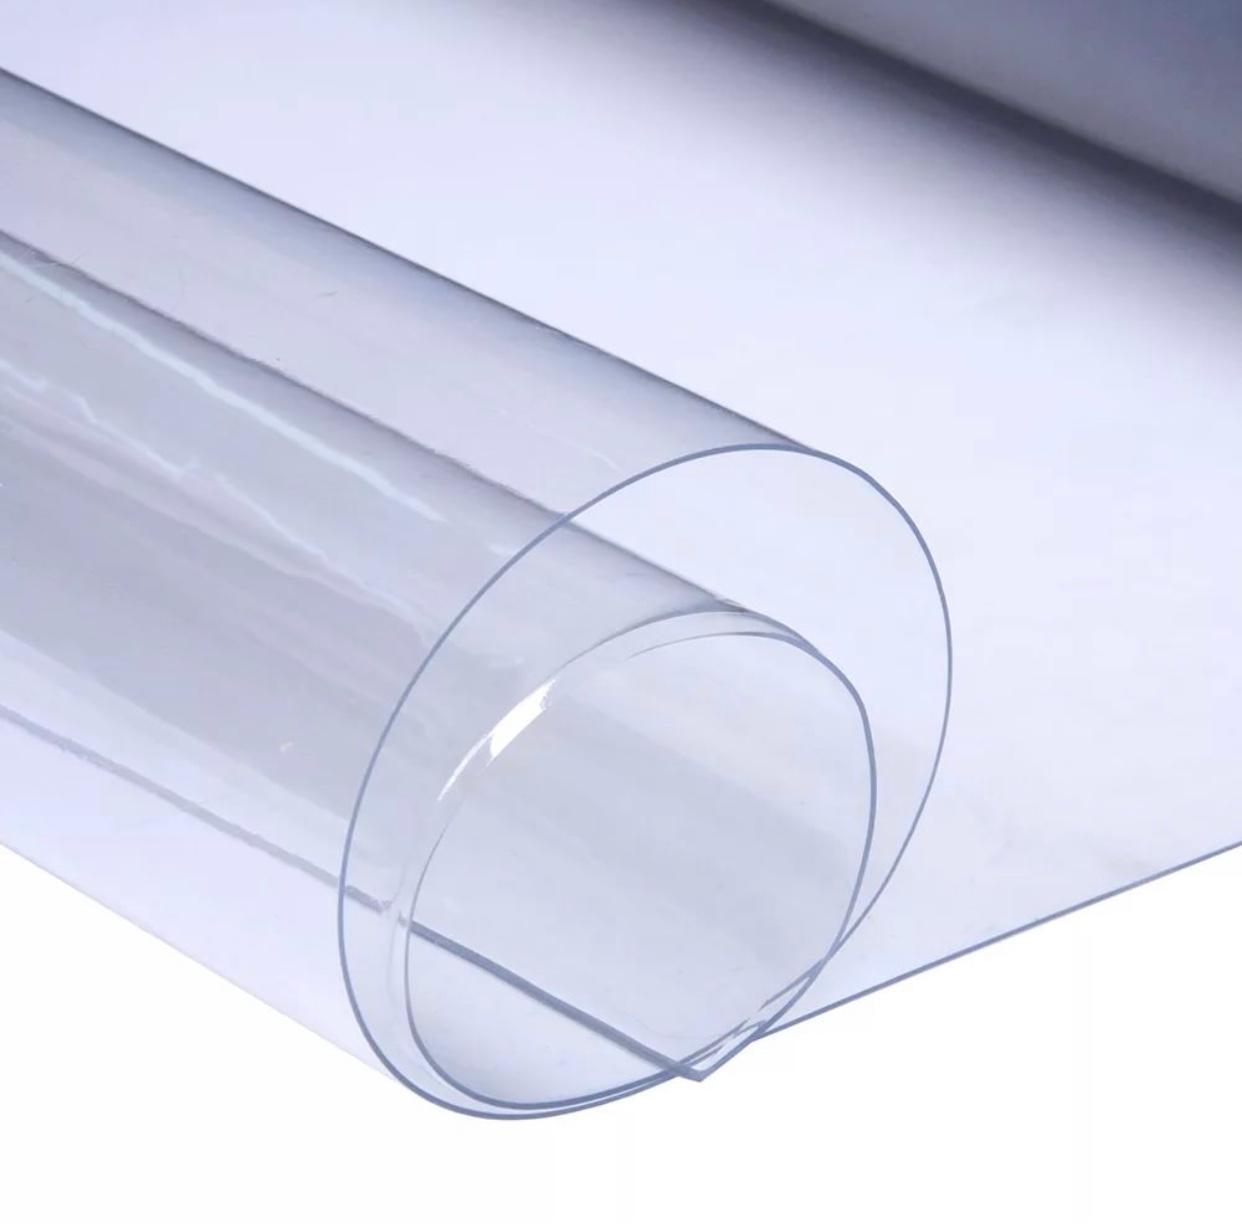 Пленка crystal. Клеенка силиконовая прозрачная dekorelle 0,8*20м, толщина 0,8мм. ПВХ плёнка прозрачная 700 микрон. ПВХ плёнка 700 микрон. Клеенка силиконовая прозрачная 1,0м*20м*0,80м гибкое стекло.